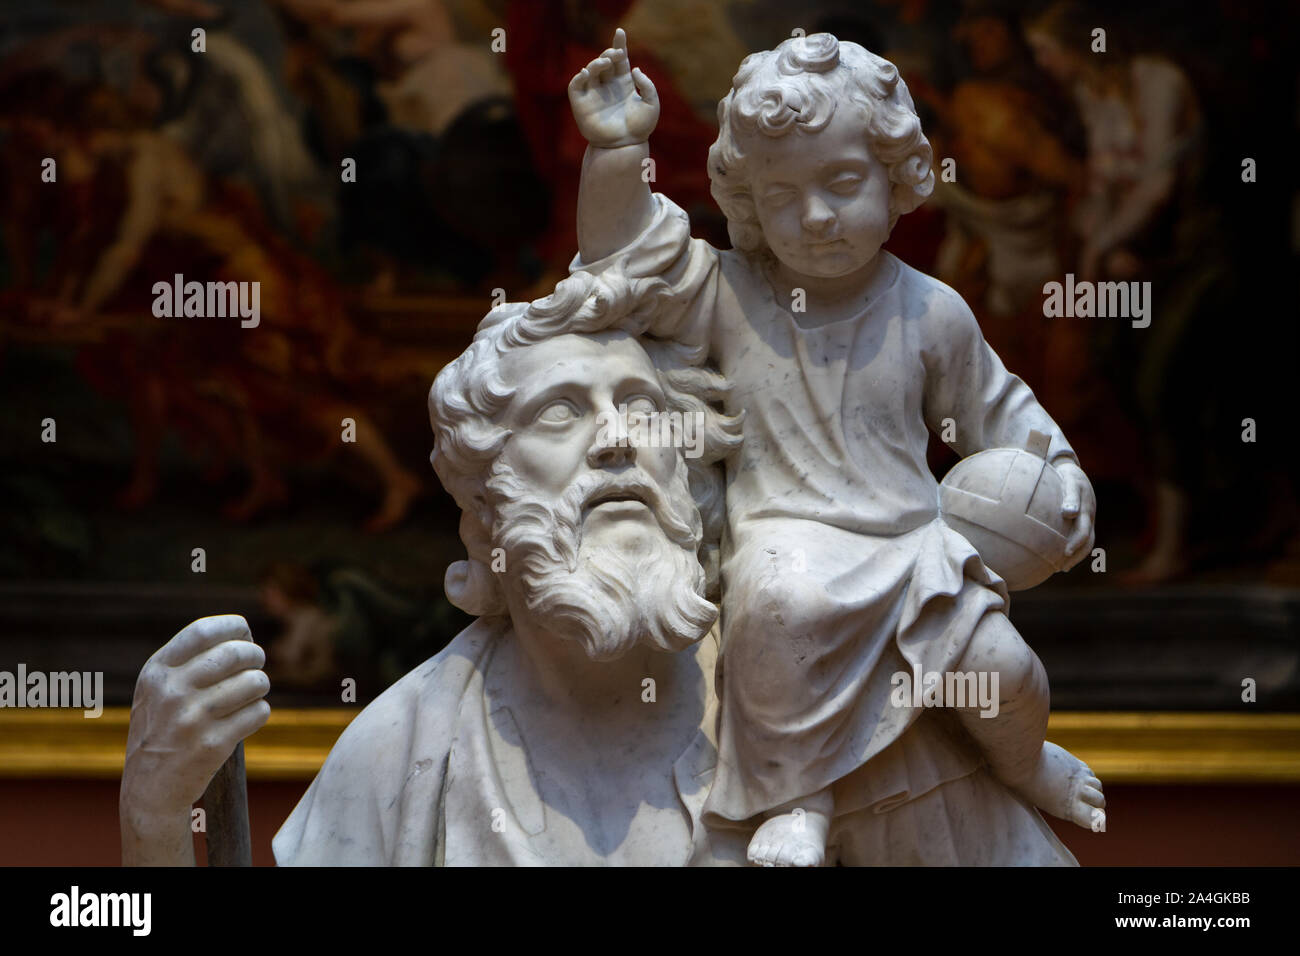 Estatua de San Cristóbal con el Niño Jesús por Pierre Schleiff (Colonia, 1601 - Valenciennes, 1641). Mármol. Museo de Bellas Artes de Valenciennes. Foto de stock